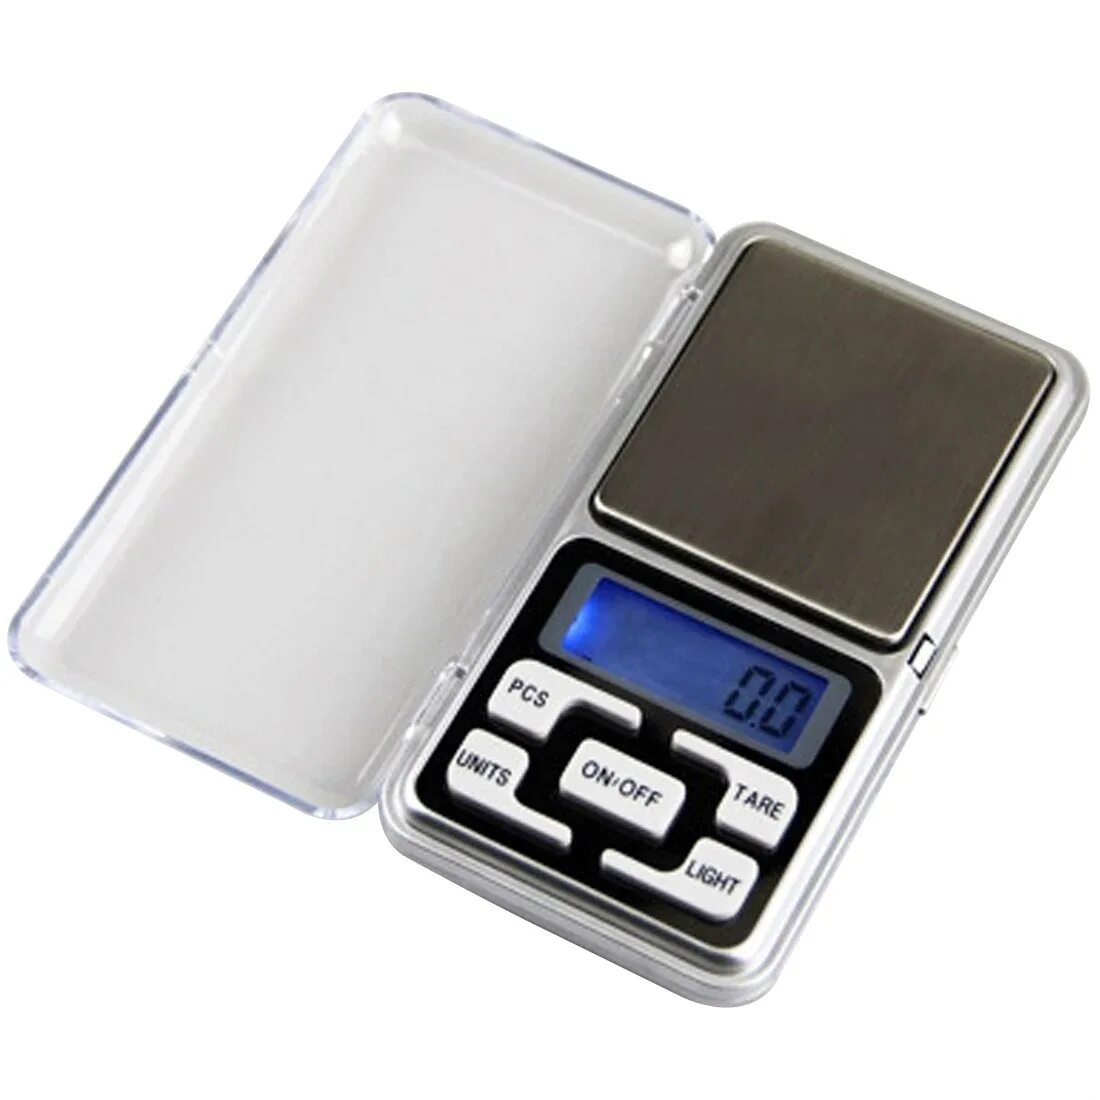 Ювелирные весы магазин. Весы Digital Scale 500g/0.01g. Ювелирные весы MH-Series 500 / Pocket Scale / карманные весы /. Весы ювелирные MG-100 (0.01G-100g). Весы электронные Pocket Scale MN-200.